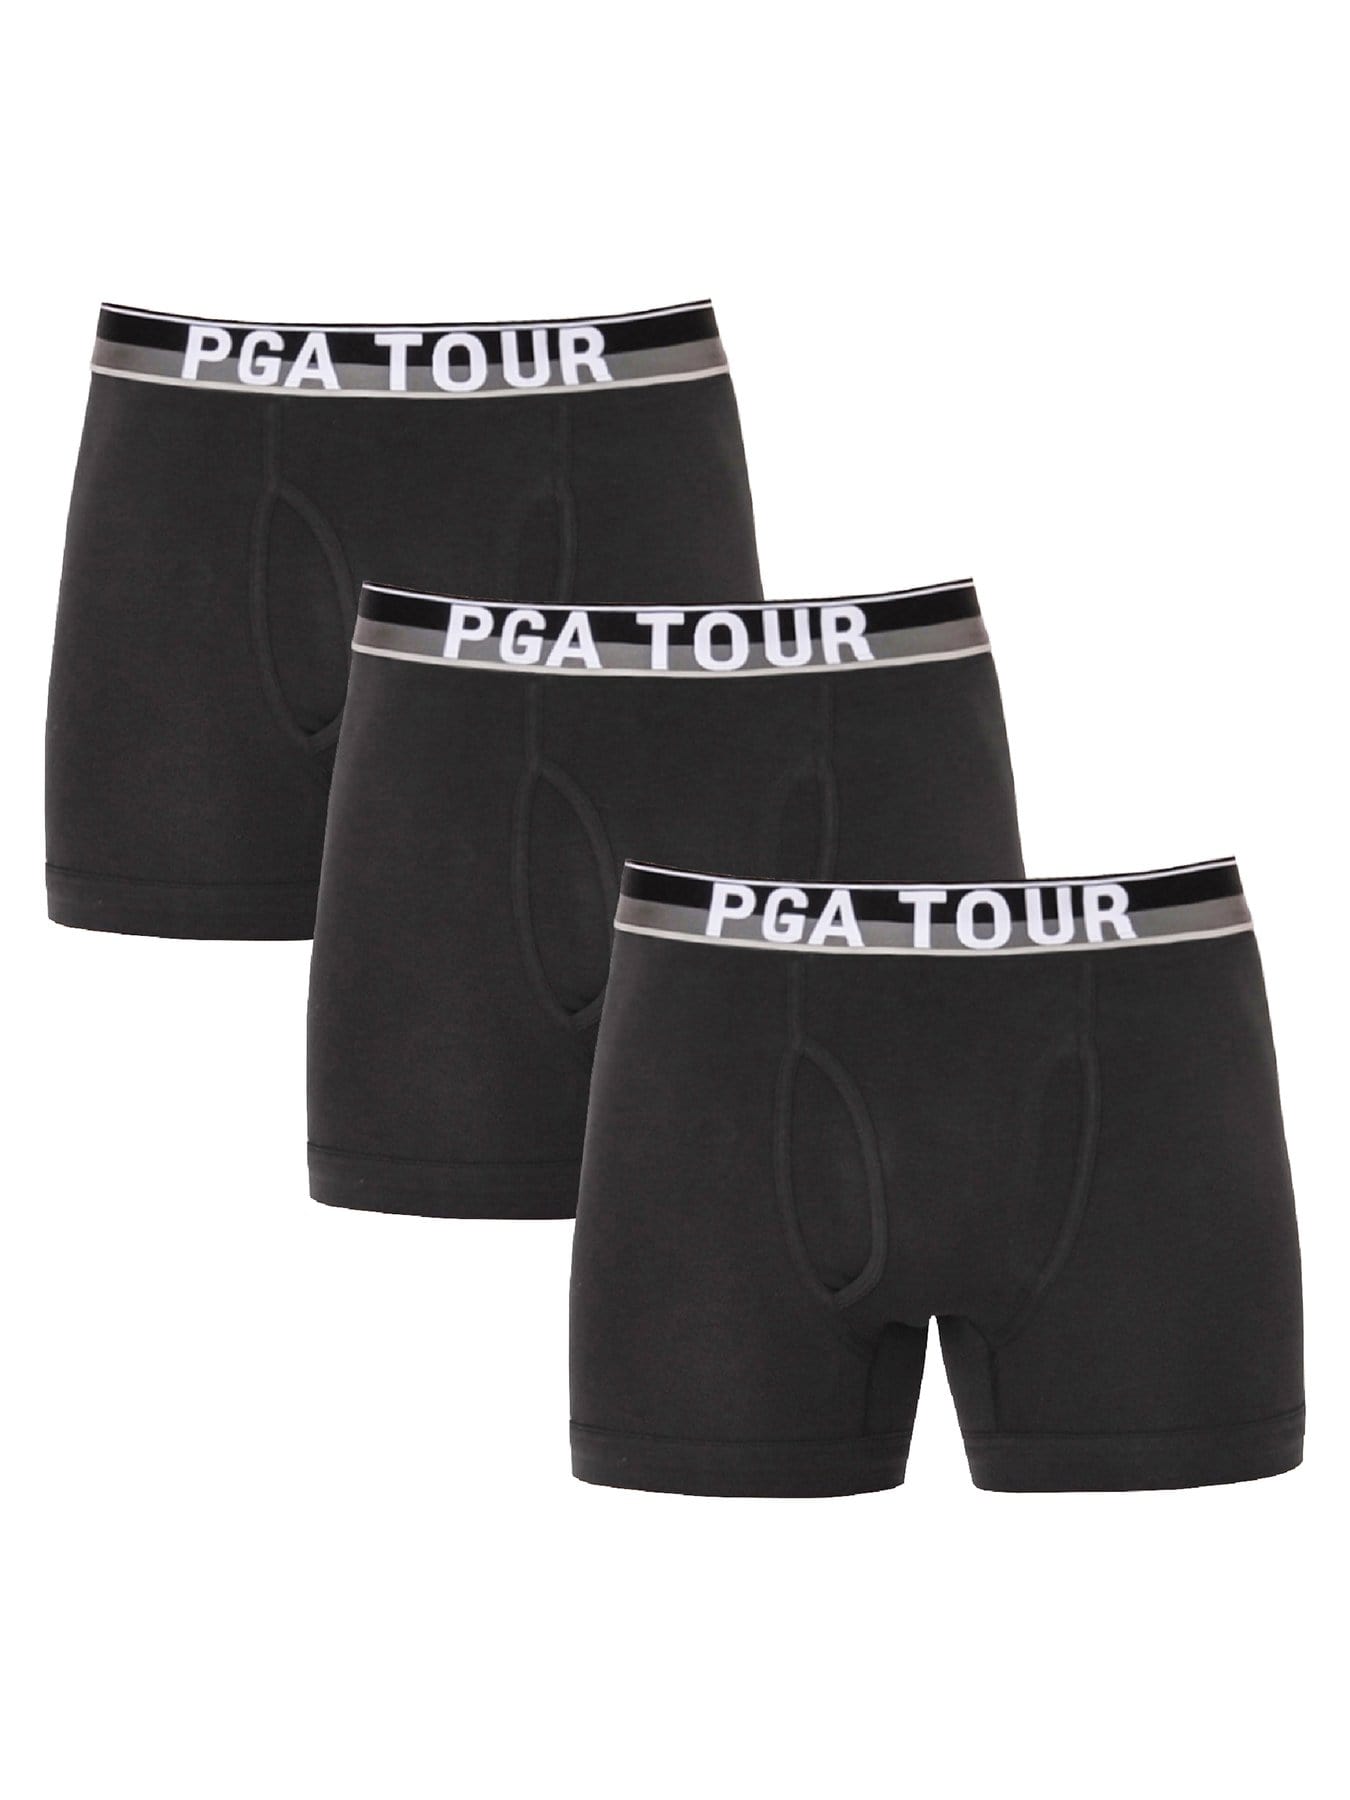 PGA TOUR Apparel Mens Boxer Brief Underwear (3-Pack), Size Large, Black/Black/Black, Cotton/Spandex | Golf Apparel Shop